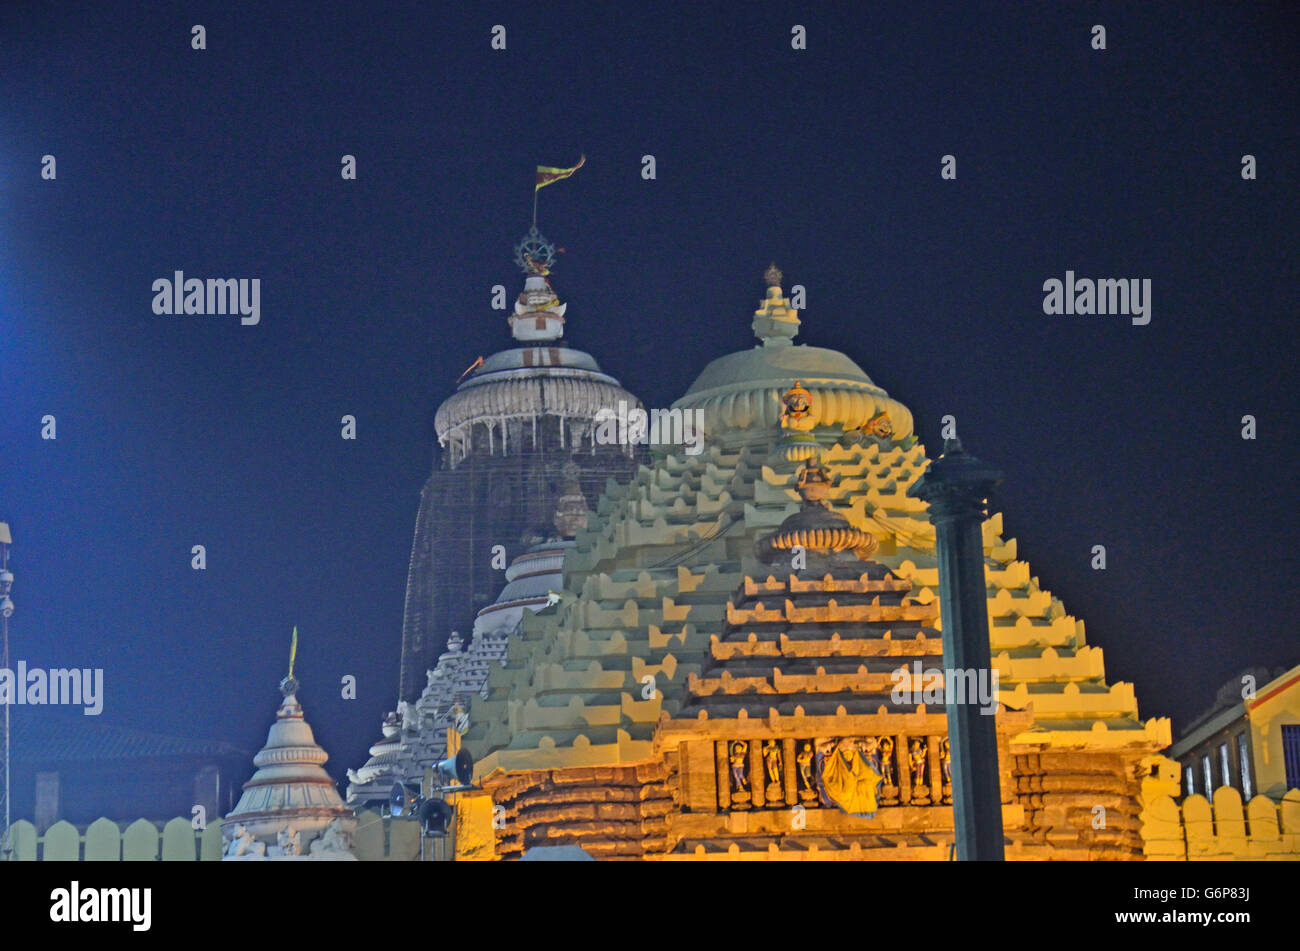 Lord Jagannatha Temple, Puri, Orissa, India Stock Photo